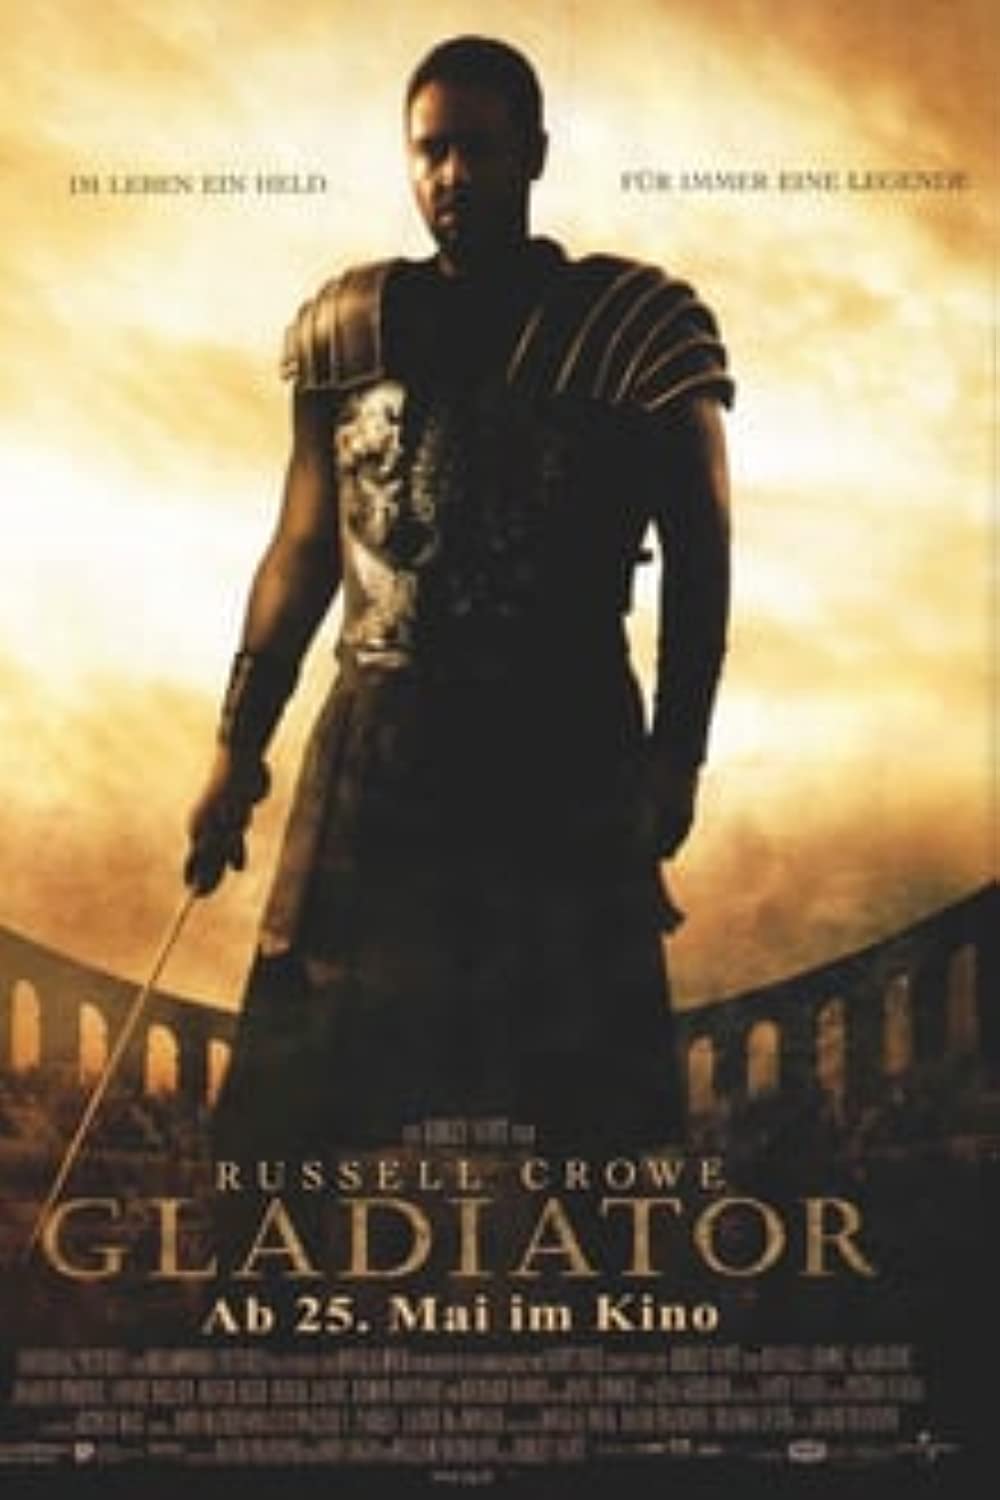 Filmbeschreibung zu Gladiator (OV)